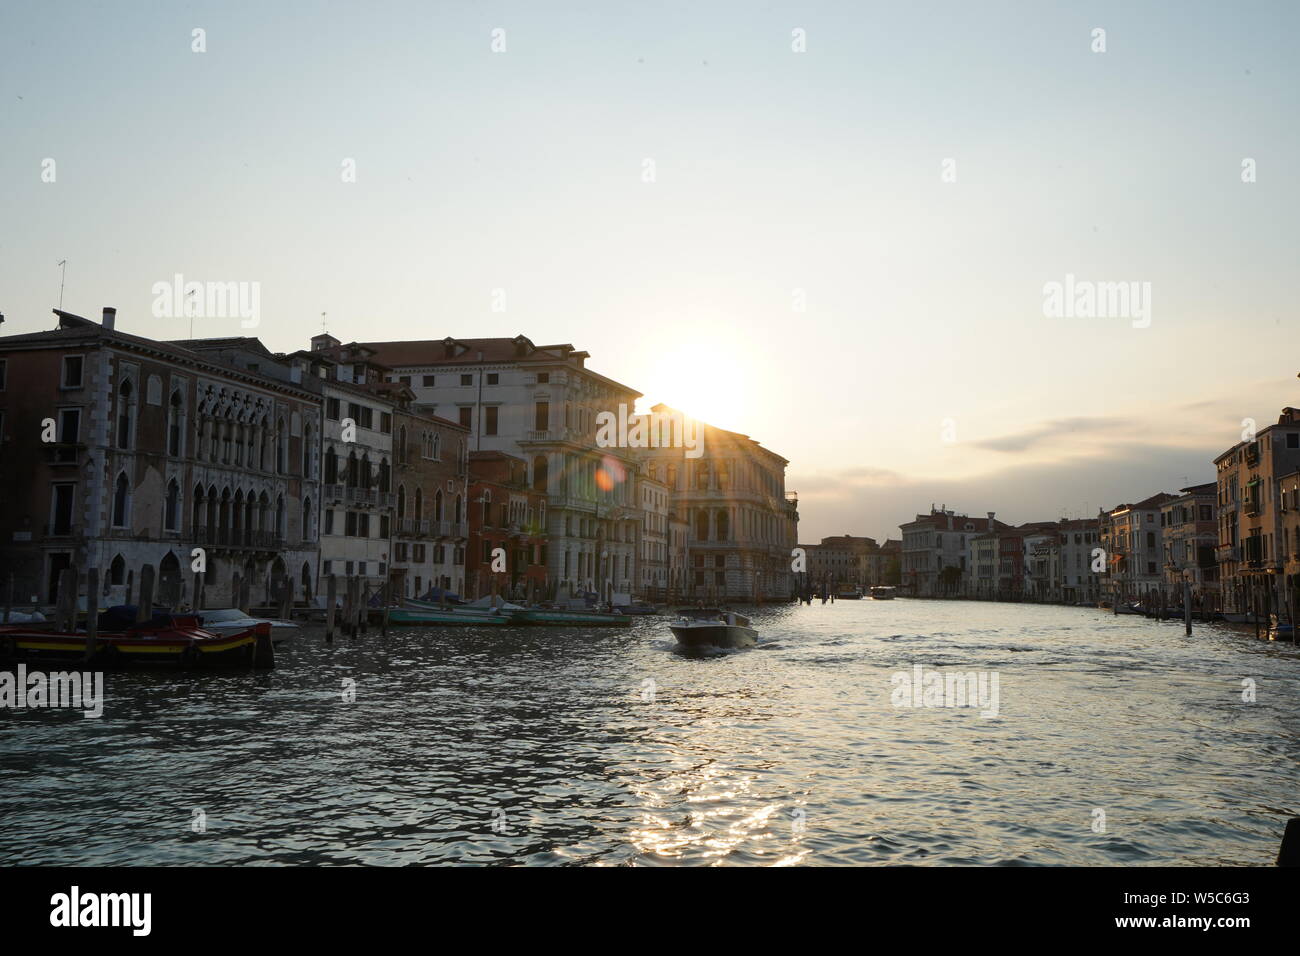 Venise, Italie - Célèbre ville italienne sur la mer Adriatique. Vue sur le Grand Canal. Une incroyable destination vacances Européennes. Banque D'Images